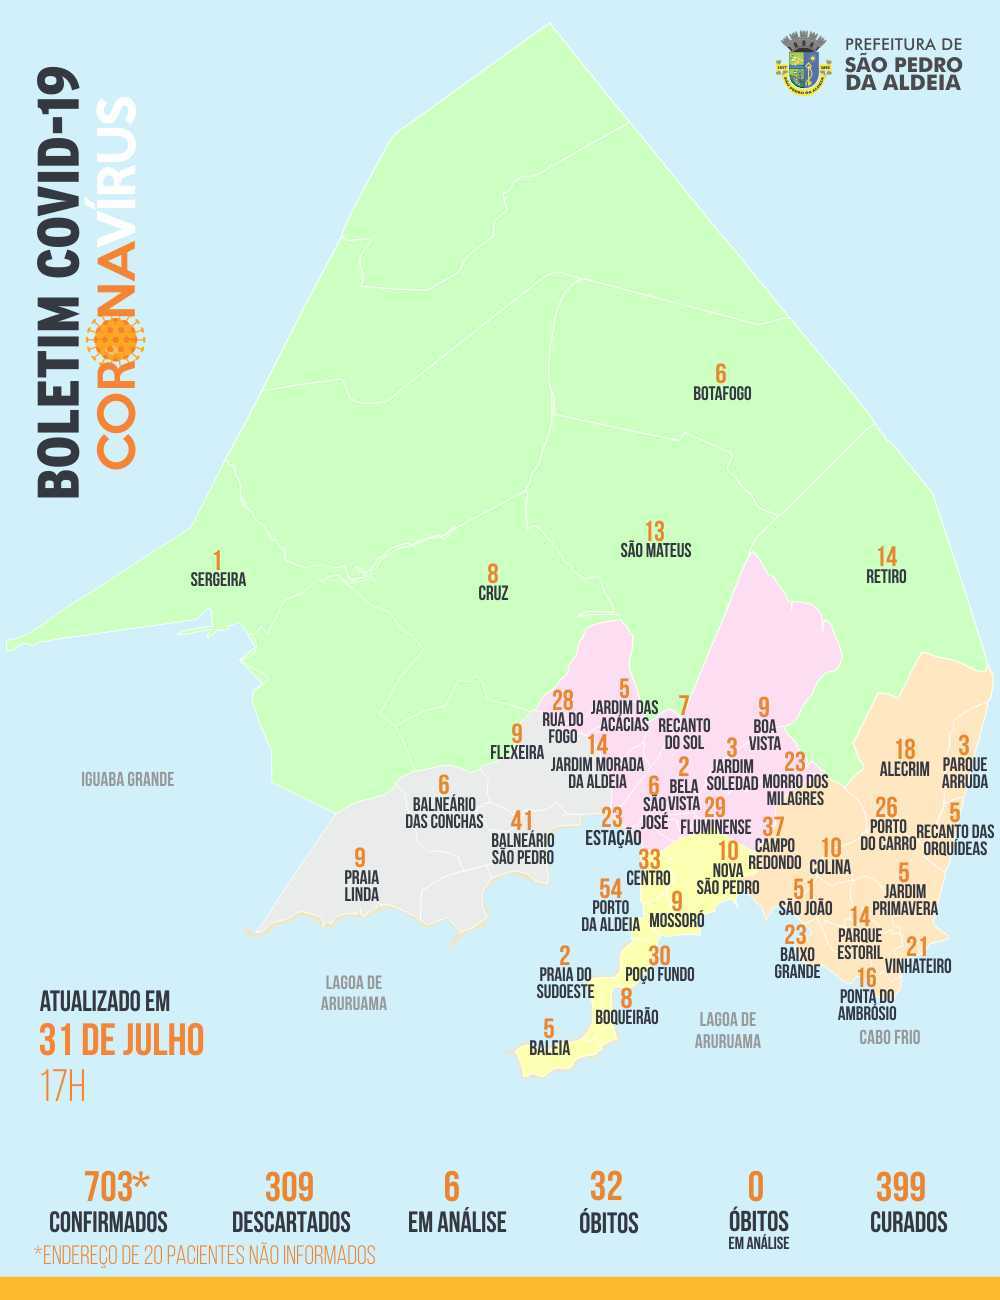 Porto da Aldeia aparece no topo da lista dos bairros com o maior número de pessoas infectadas pelo novo coronavírus em São Pedro da Aldeia